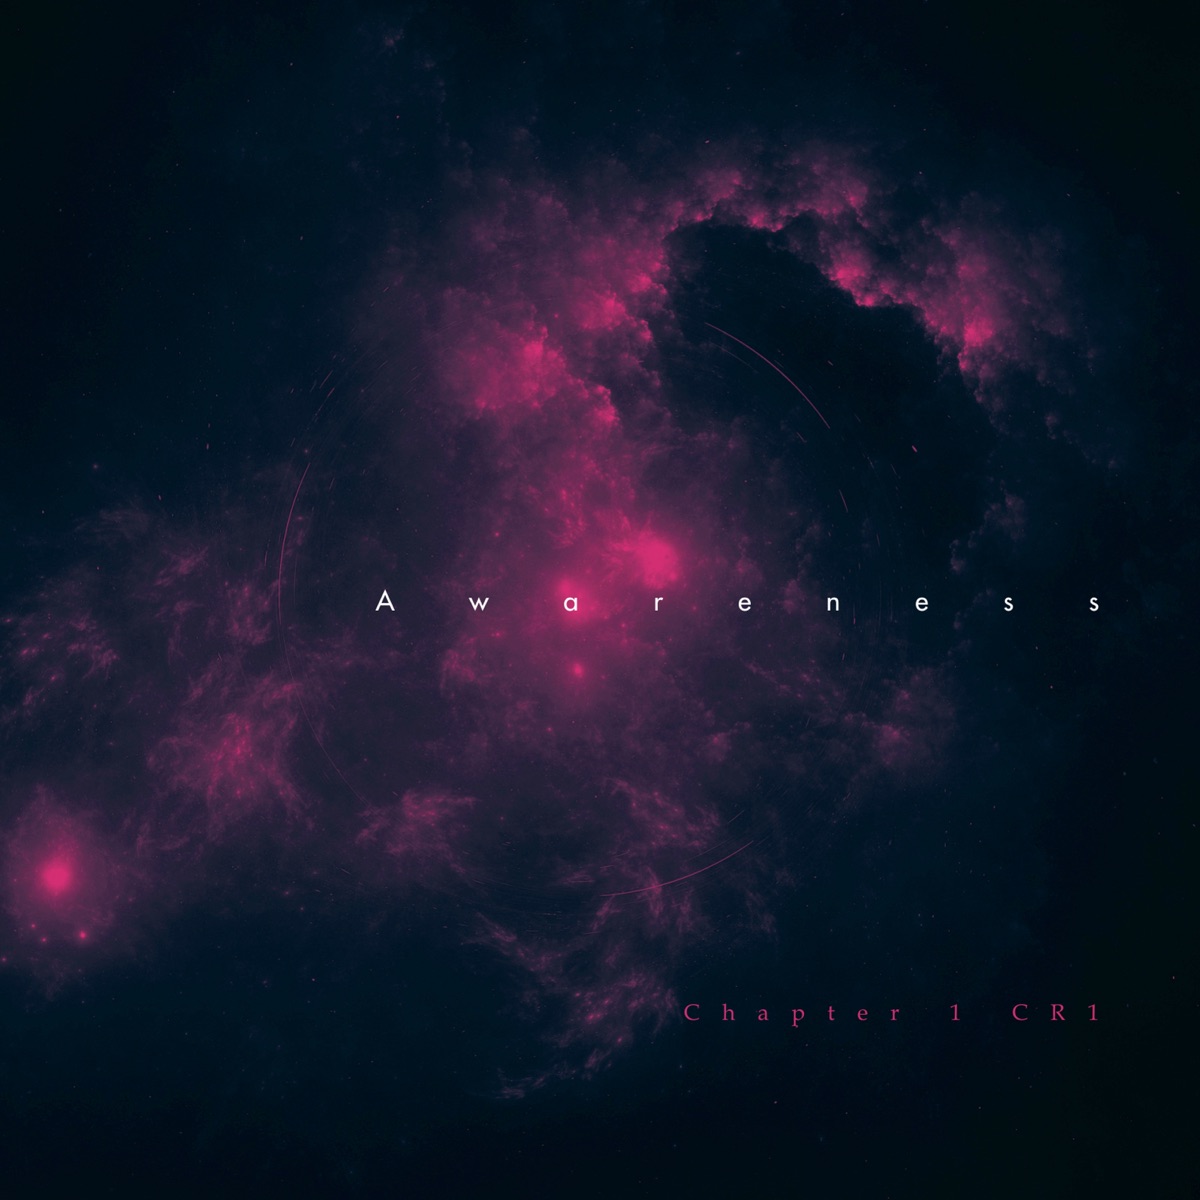 Dark Phonk - Single — álbum de Chapter 1 CR1 — Apple Music